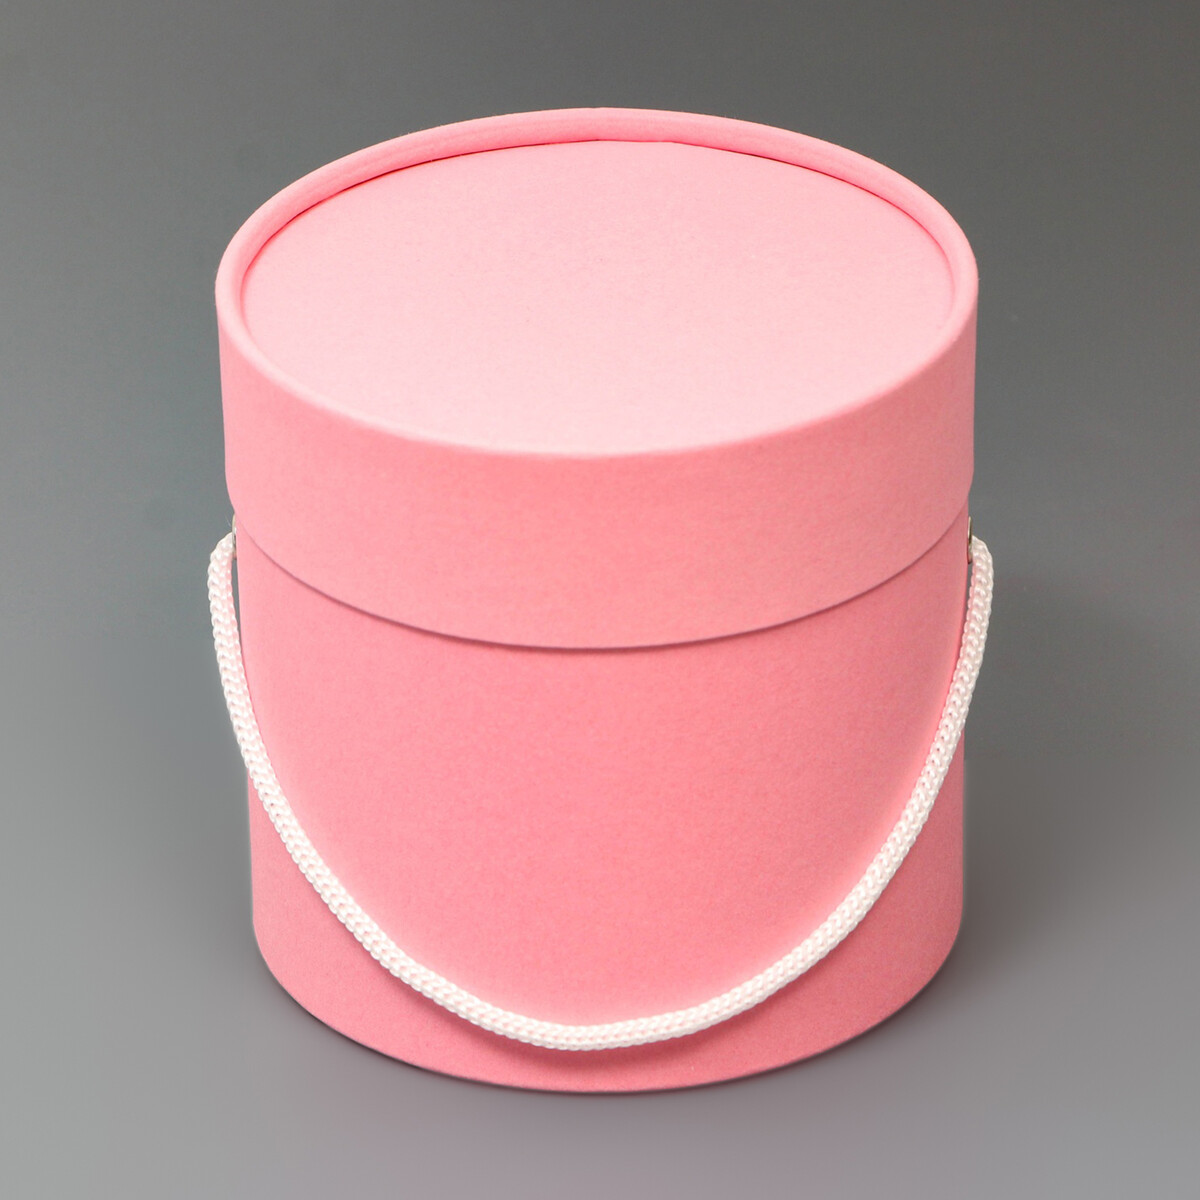 Подарочная коробка, круглая, розовая,с шнурком, 12 х 12 см подарочная коробка круглая белая с шнурком 12 х 12 см